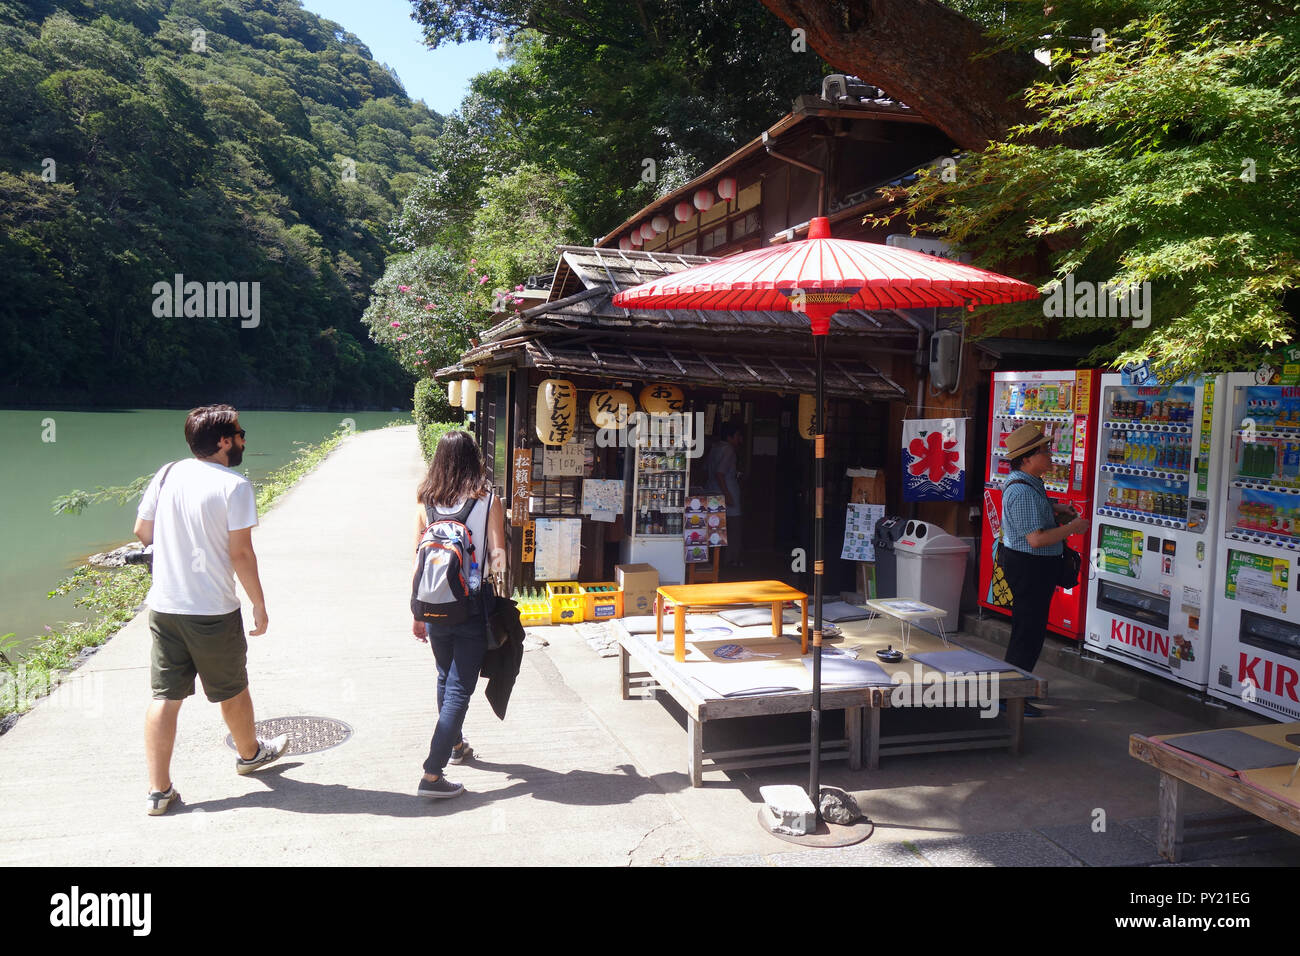 Les touristes visitant restaurant sur la rive de la rivière Ōi, Sagano Arashiyama, Kyoto, Japon. Aucune communication ou MR Banque D'Images